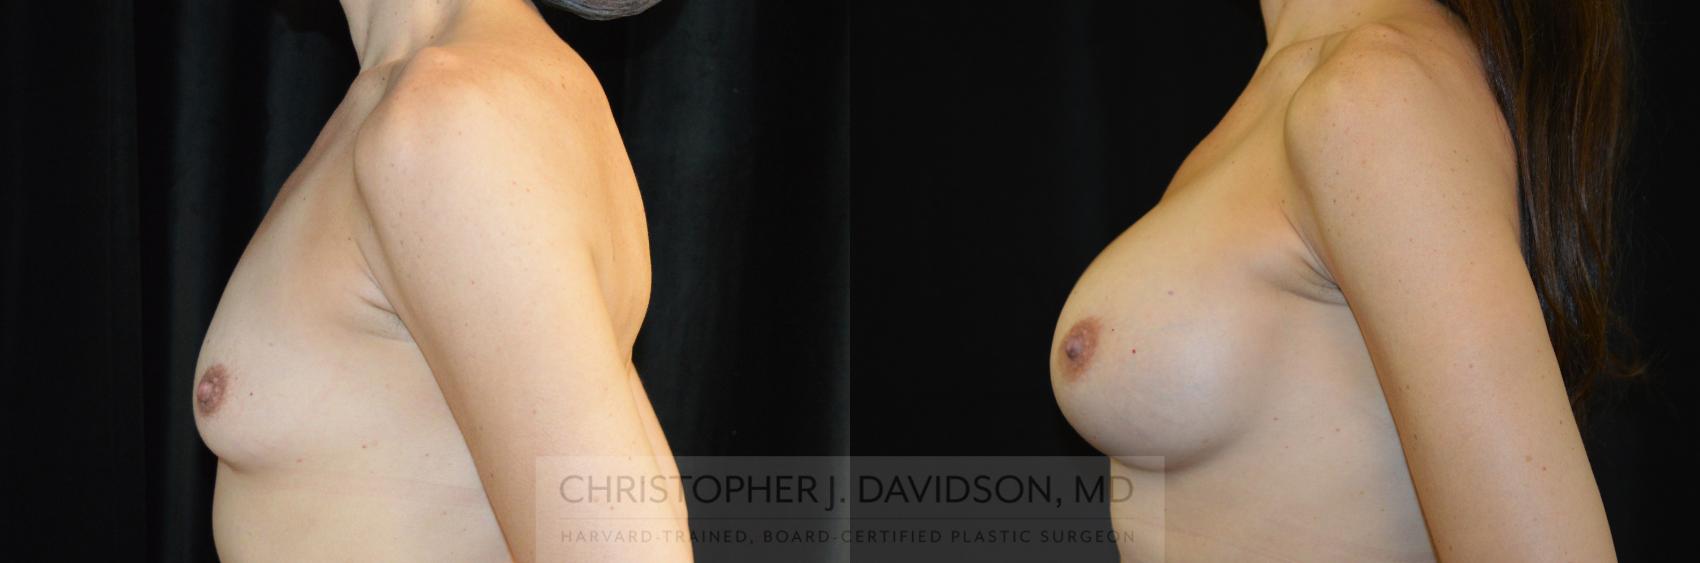 Breast Augmentation Case 275 Before & After Left Side | Wellesley, MA | Christopher J. Davidson, MD